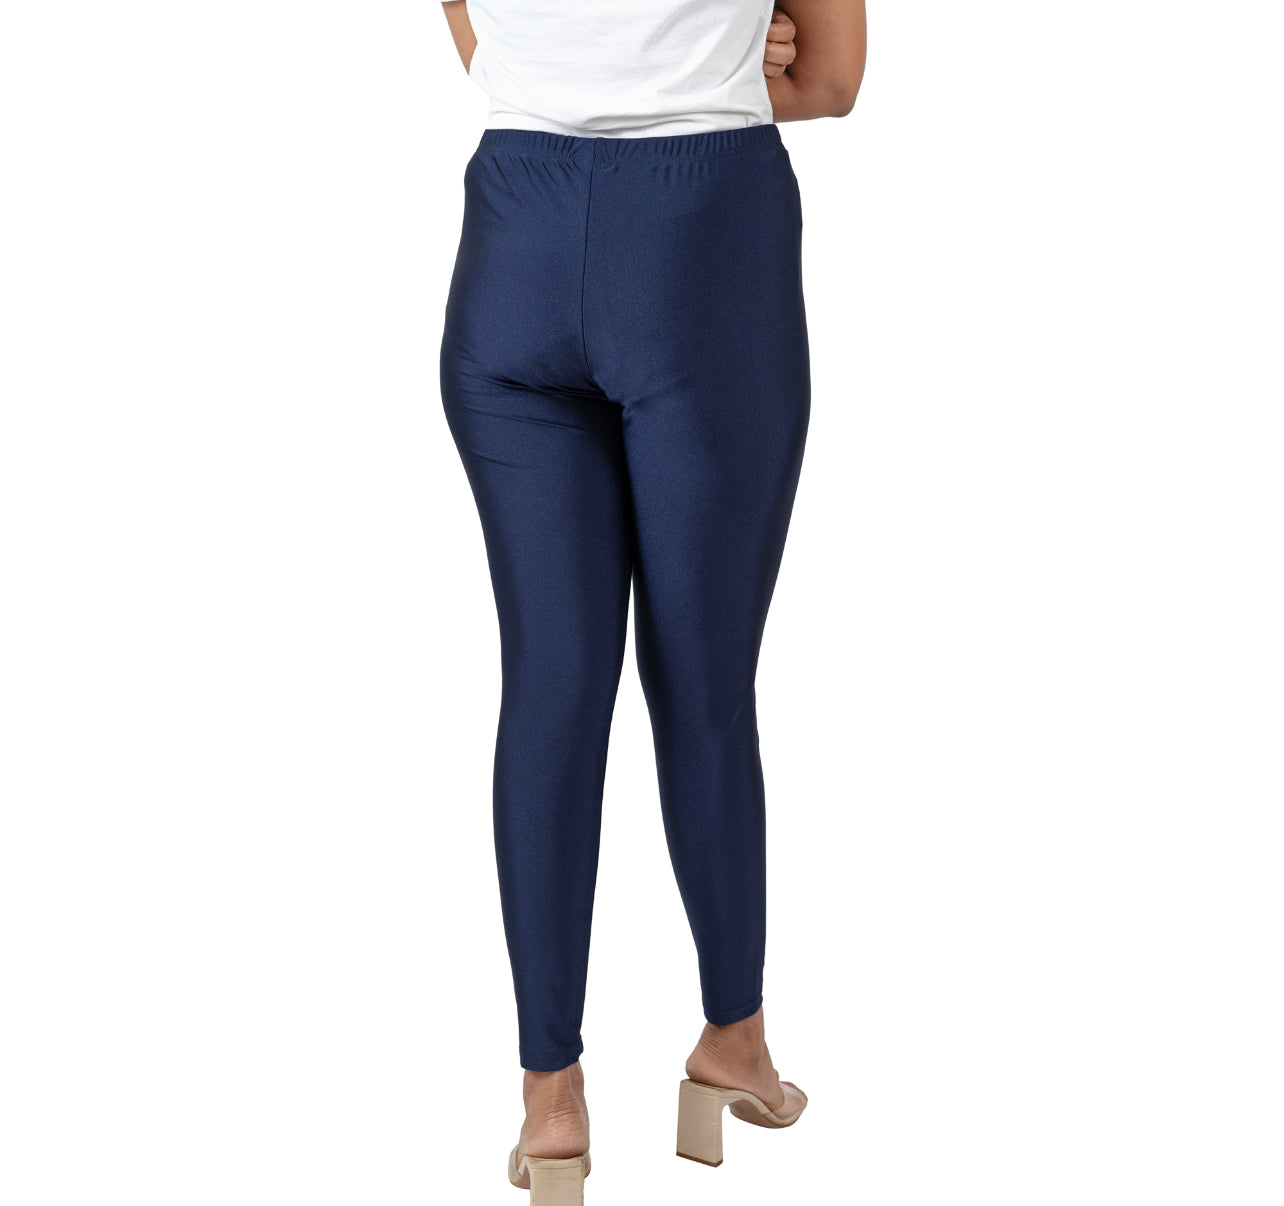 Mondetta Ladies' High Waist Active Legging Side Pockets Navy Blue Size  Medium | eBay